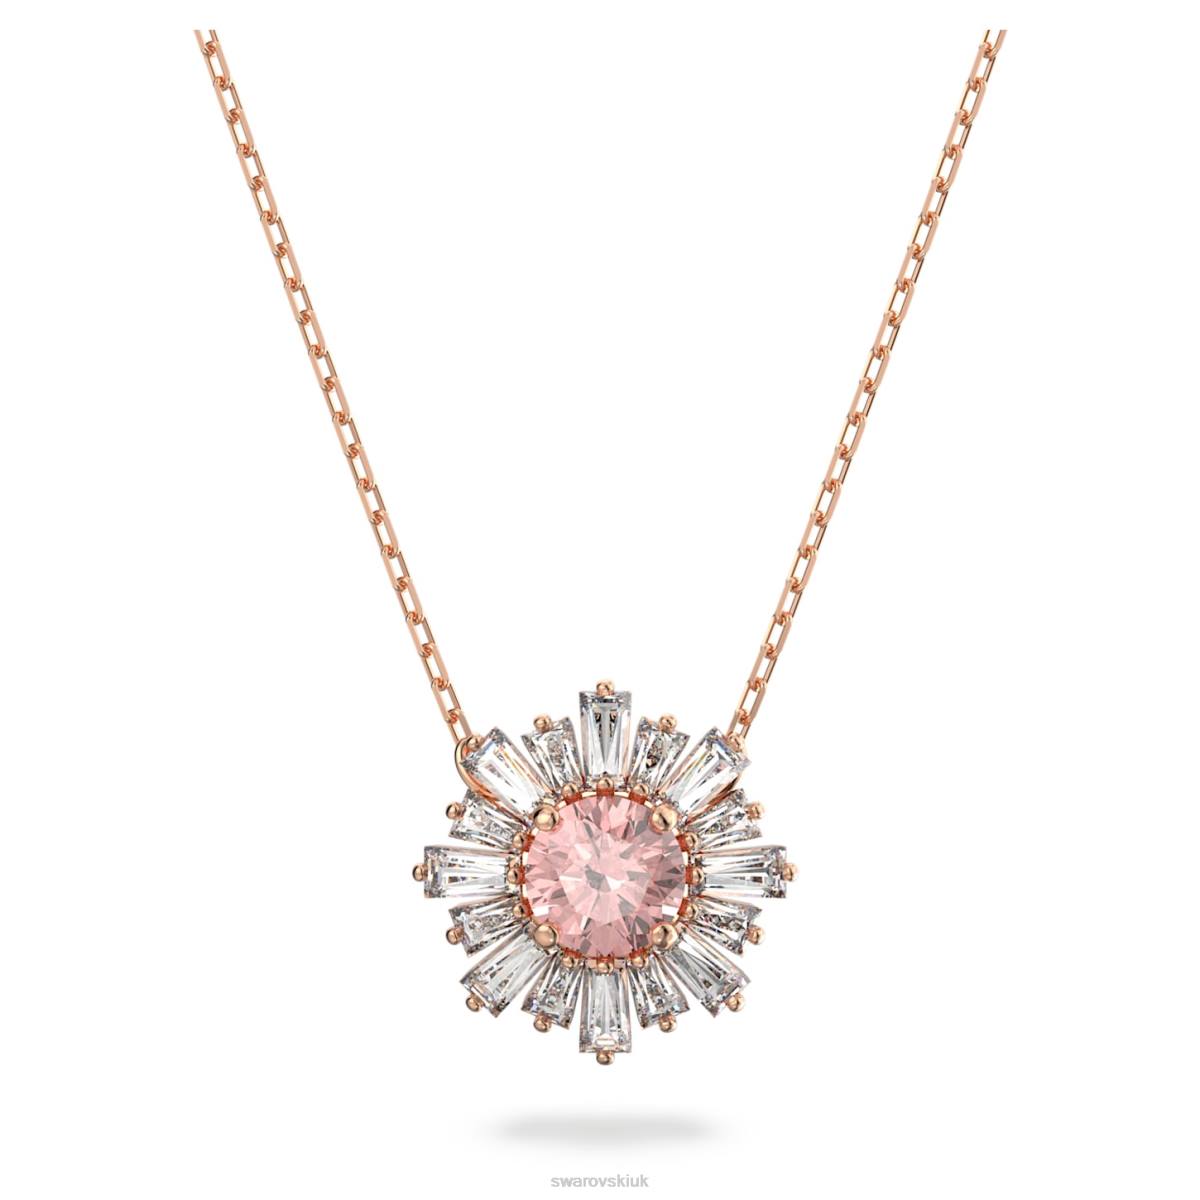 Jewelry Swarovski Sunshine pendant Mixed cuts, Sun, Pink, Rose gold-tone plated 48JX236